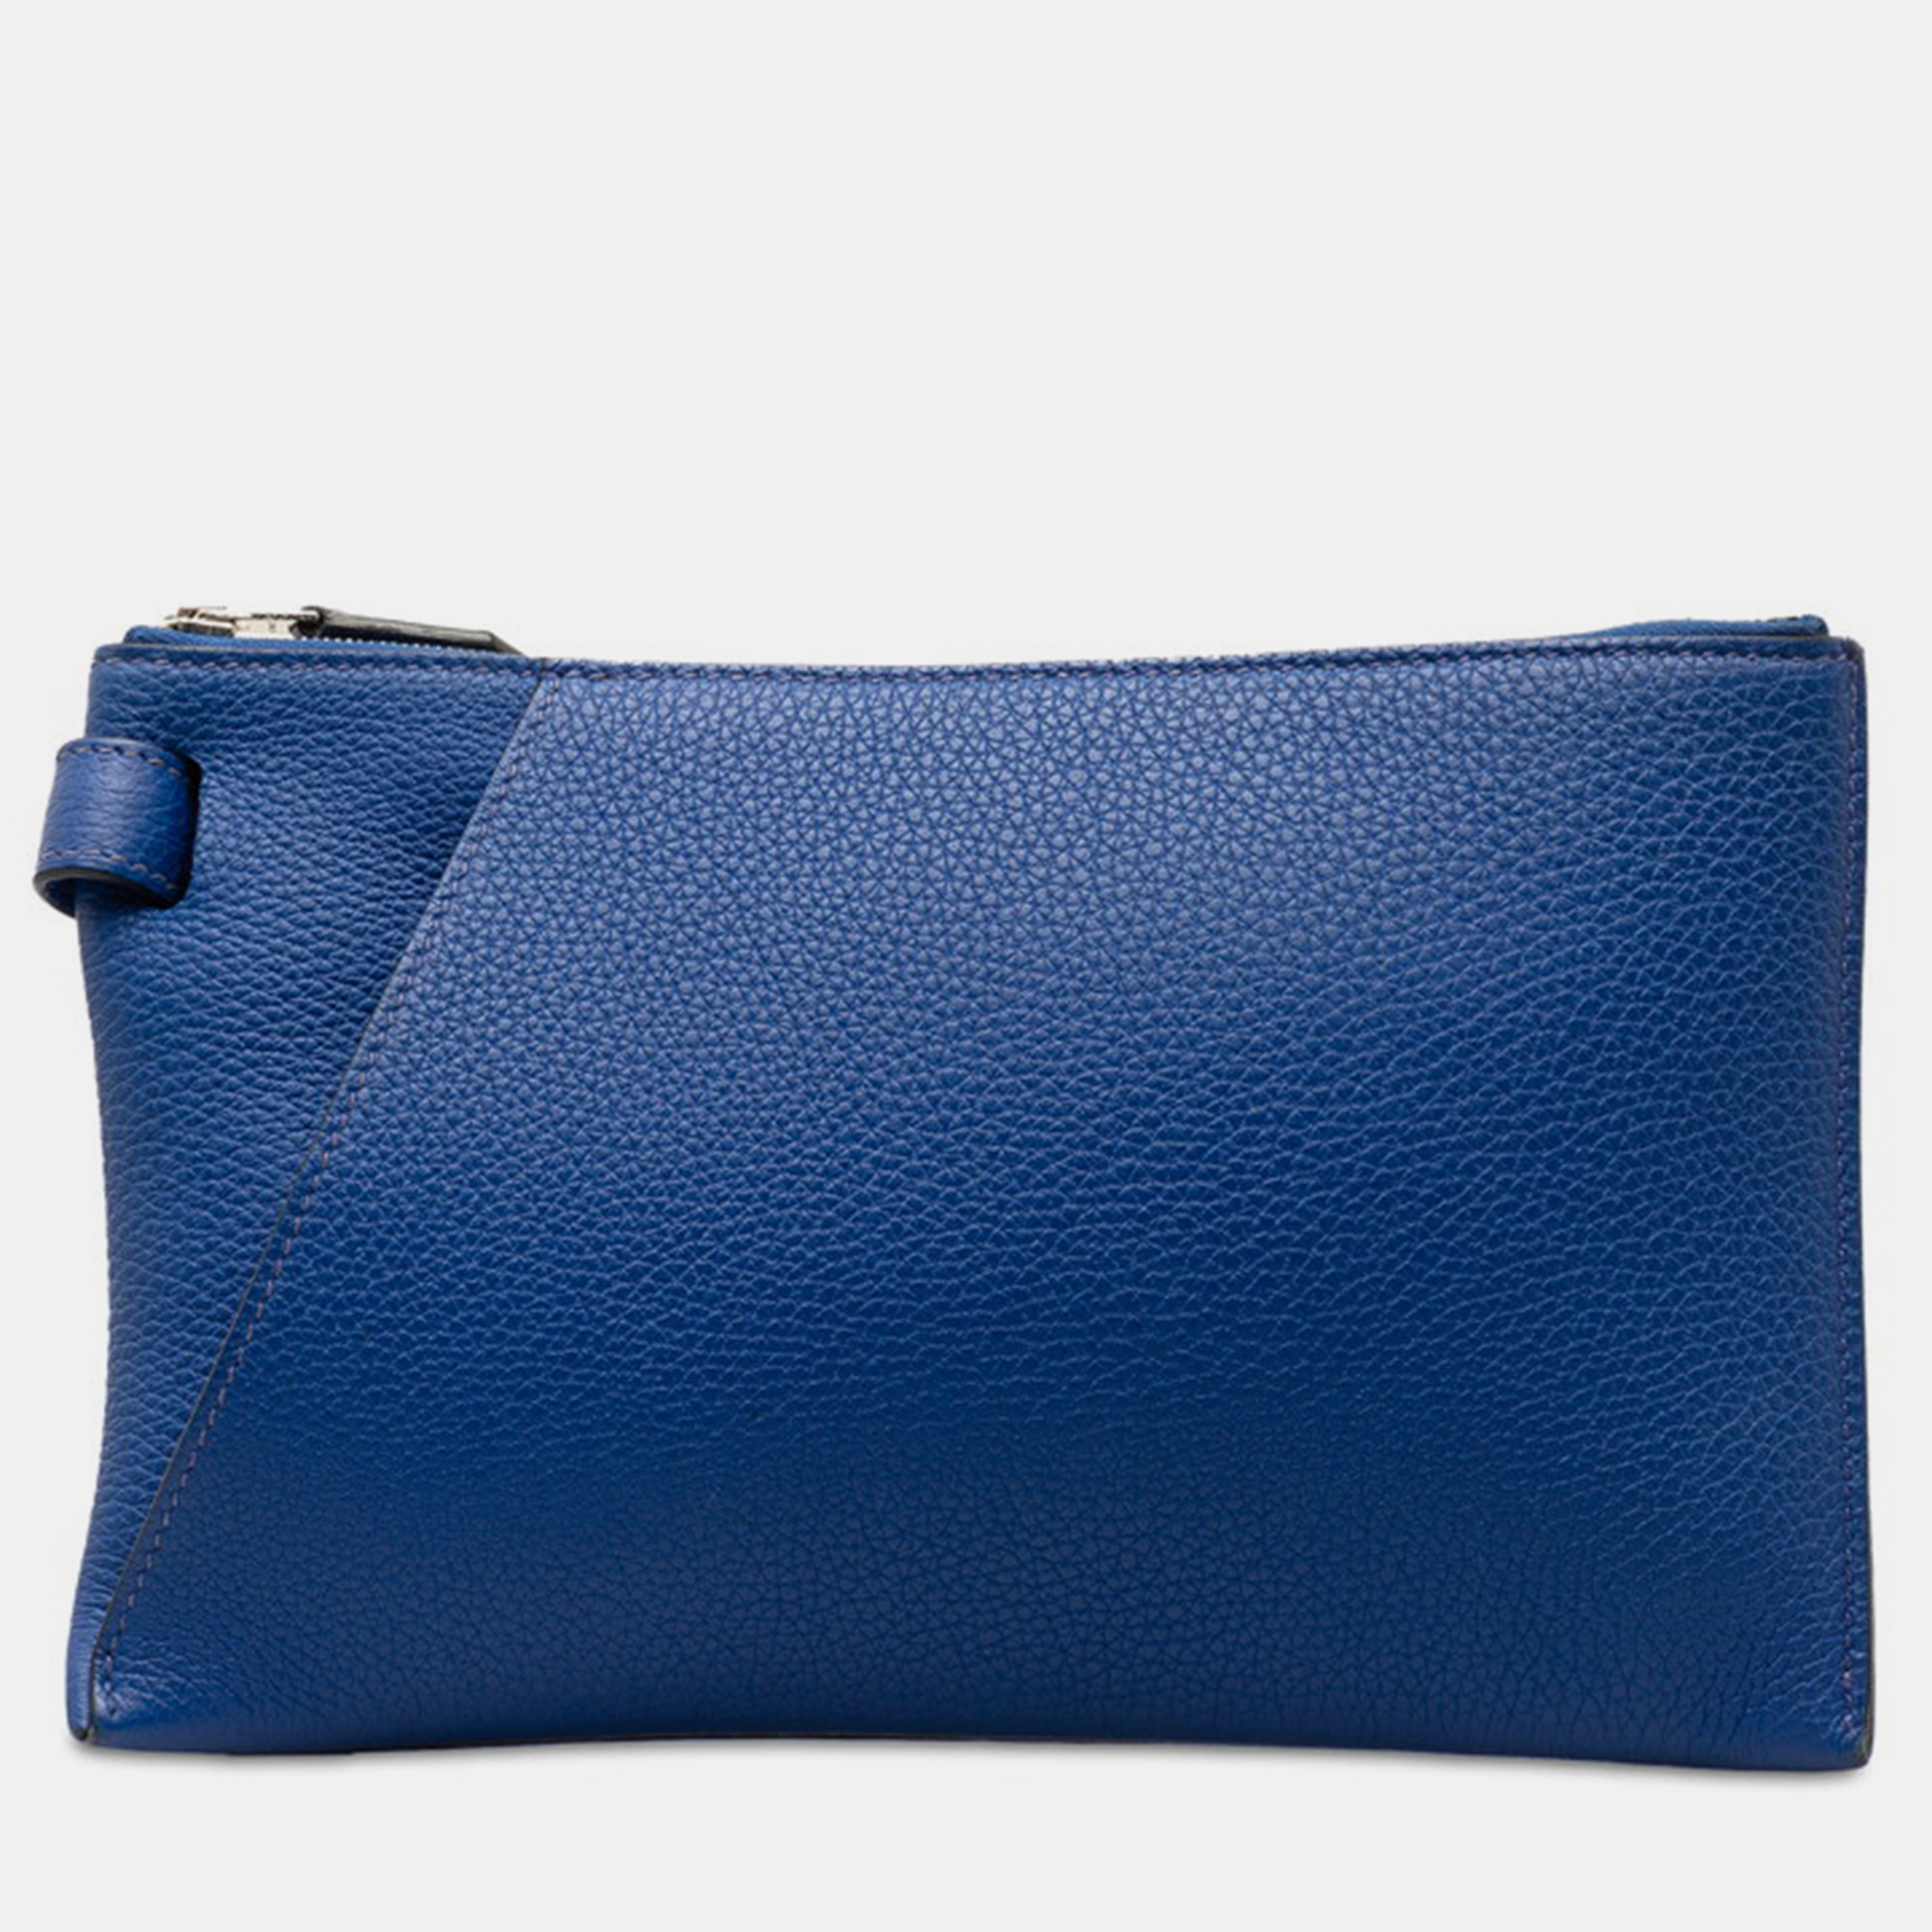 Hermes blue leather togo cabavertige pouch 24 bag